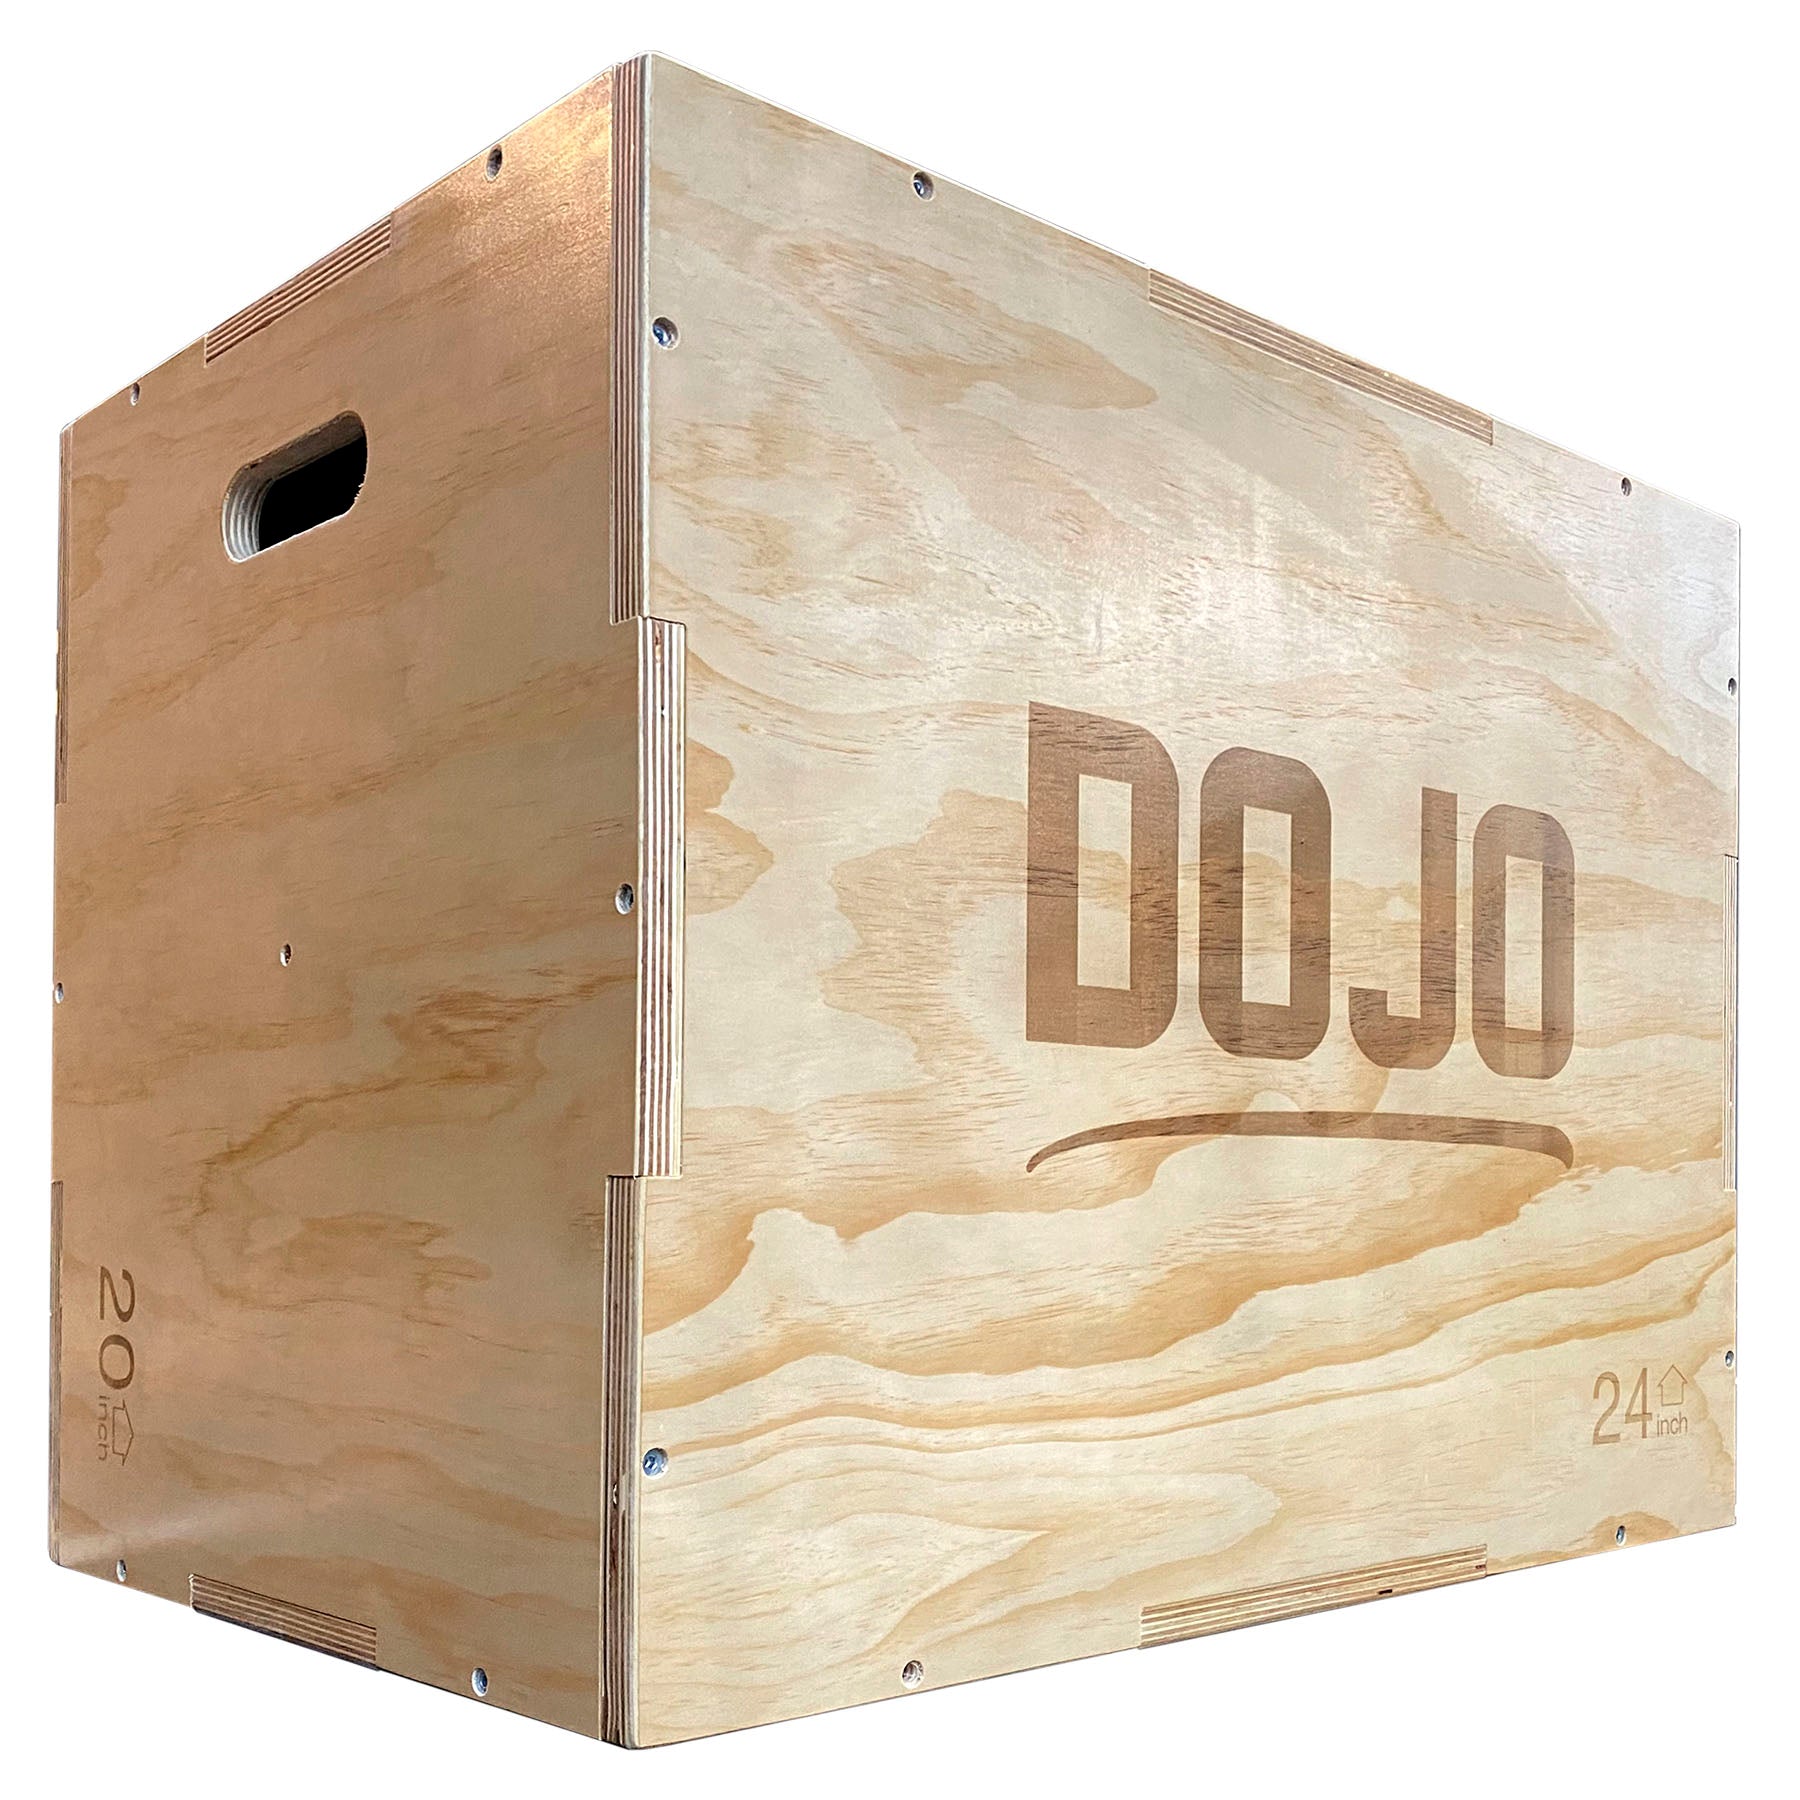 Cajon plio pplyo box pliometrico para crossfit funcional rehabilitación box jump cajon dojo uruguay comprar online 